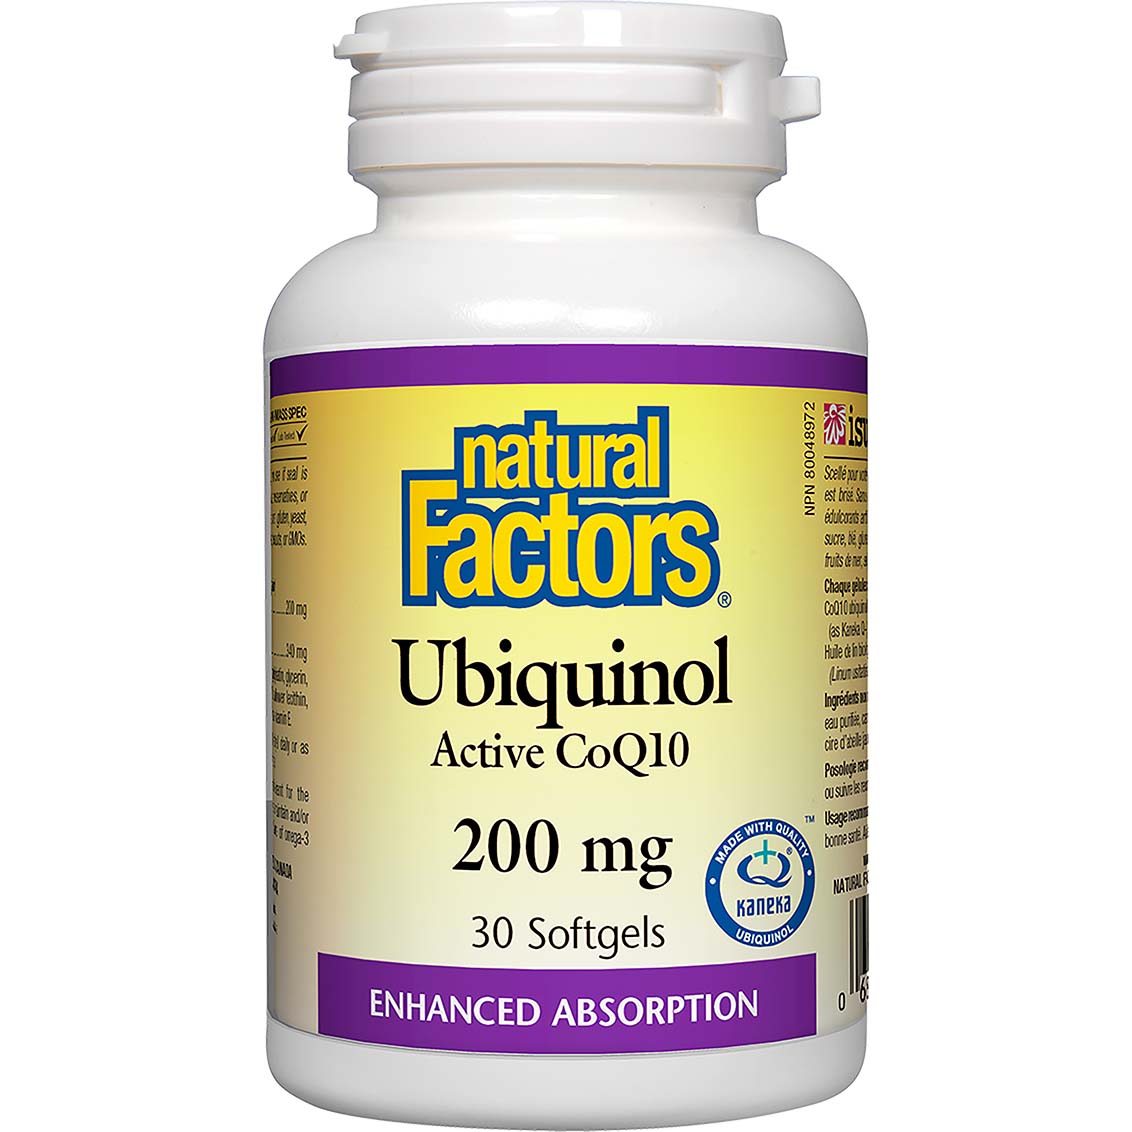 Natural Factors Ubiquinol Active CoQ10, 200 mg, 30 Softgels